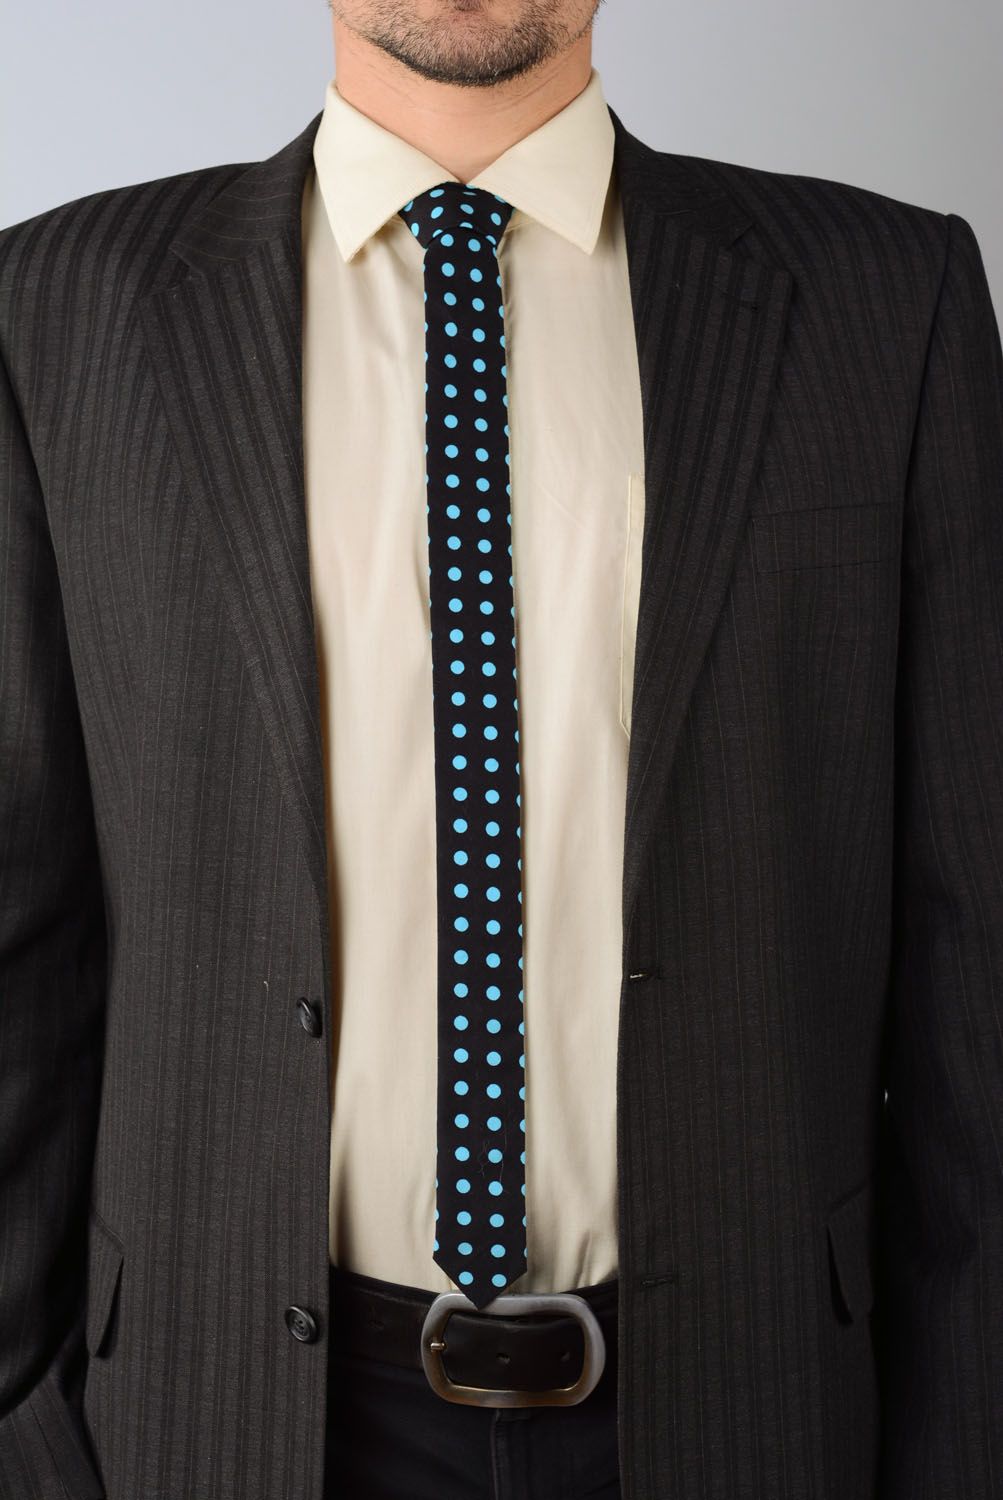 Gravata de algodão Preto com bolinhas azuis foto 1